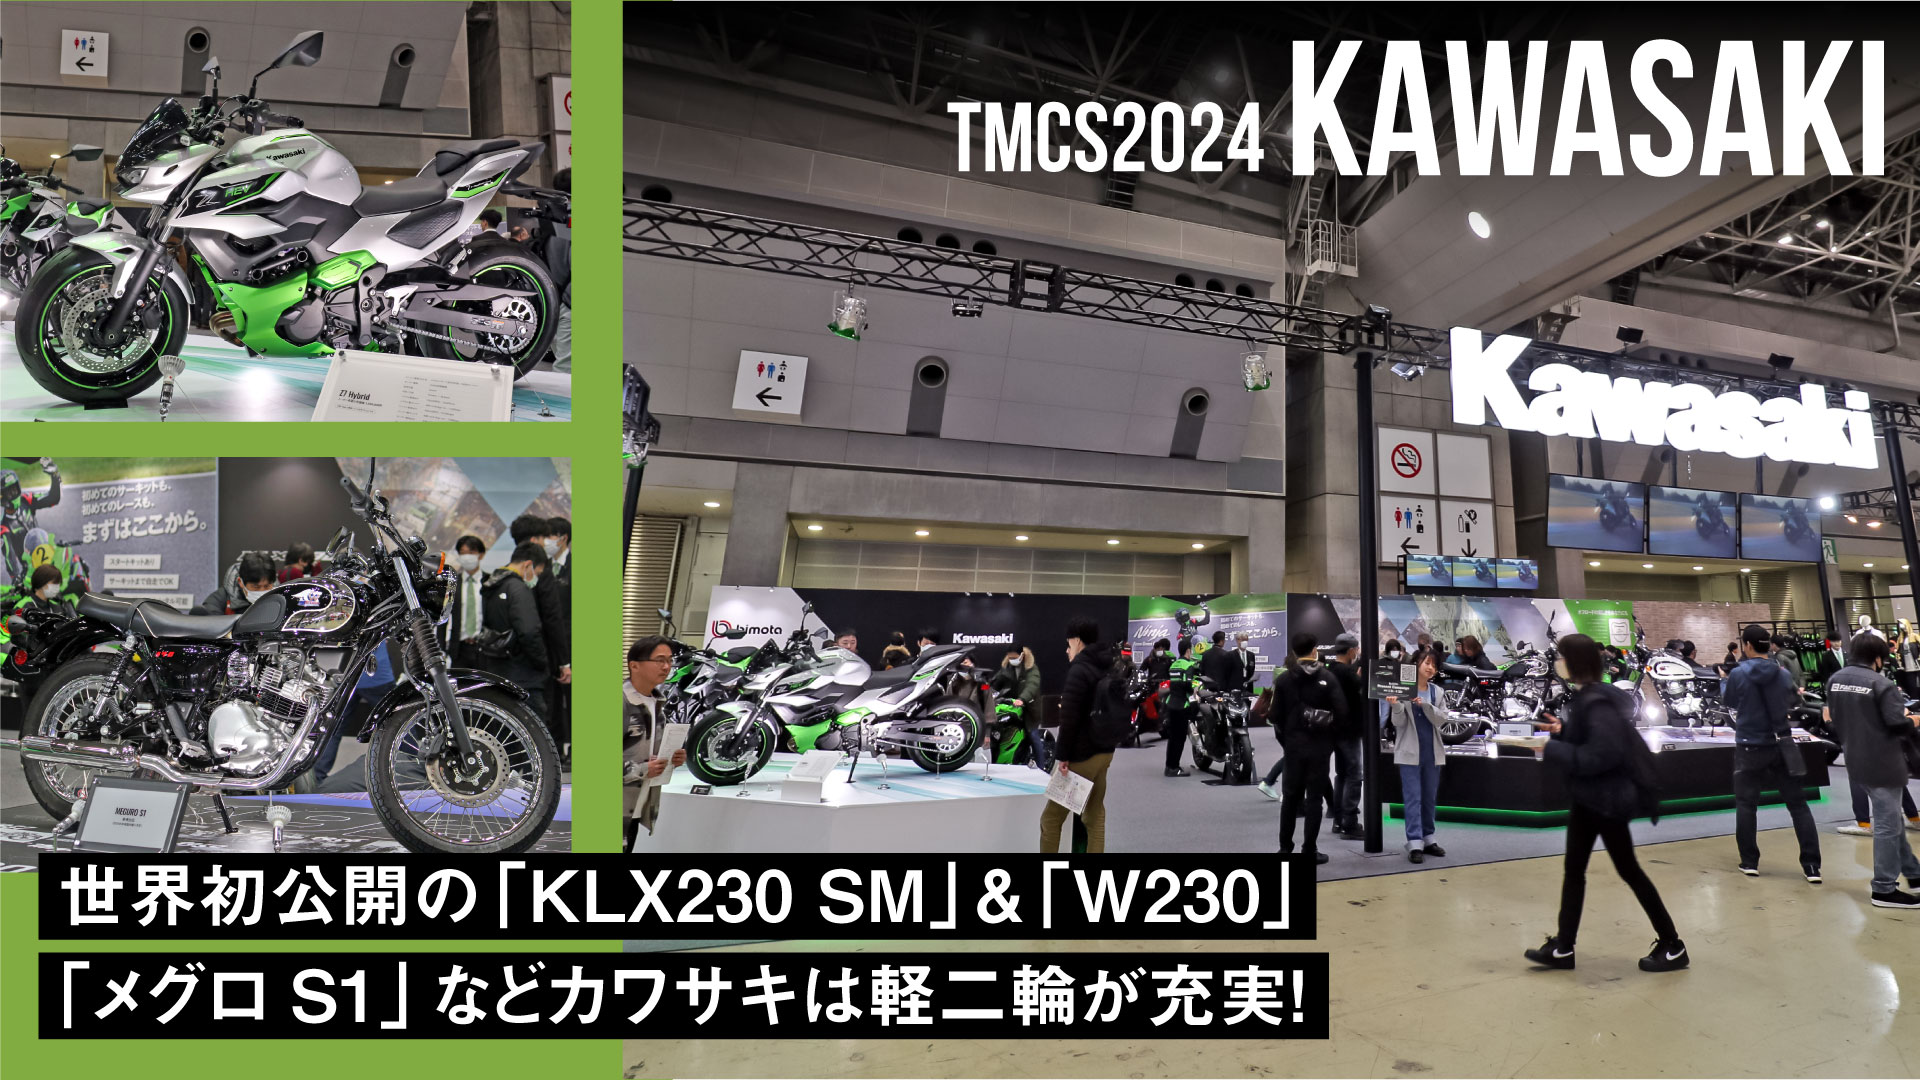 世界初公開の「KLX230 SM」&「W230」・「メグロS1」などカワサキは軽二輪が充実！【東京モーターサイクルショー2024】